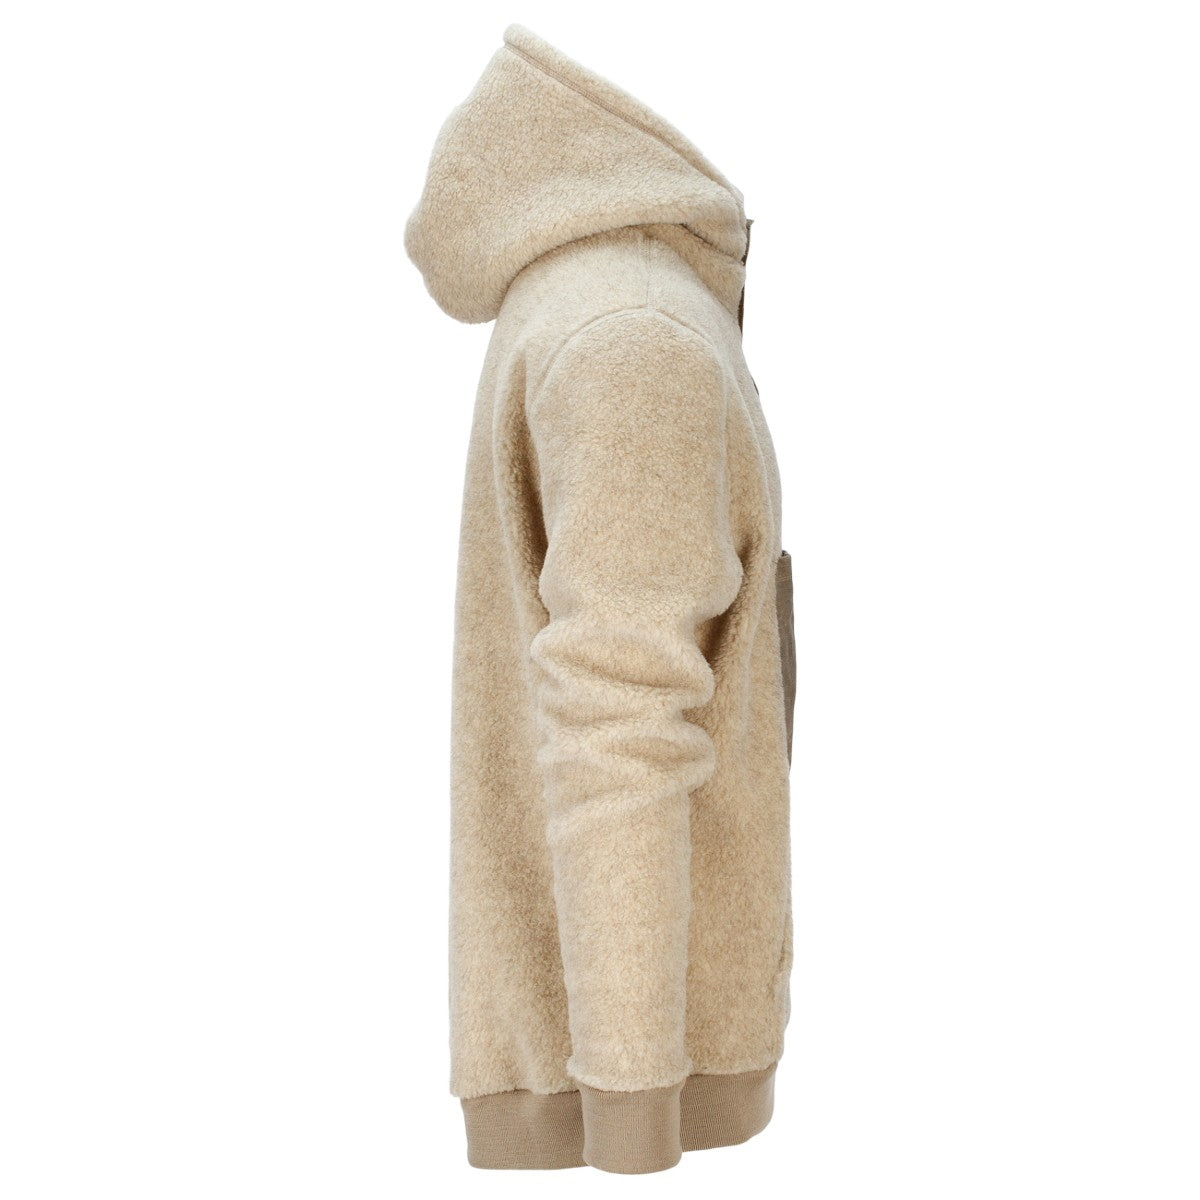 Amundsen Sports - Men's Heroes Wool Fleece - Natural